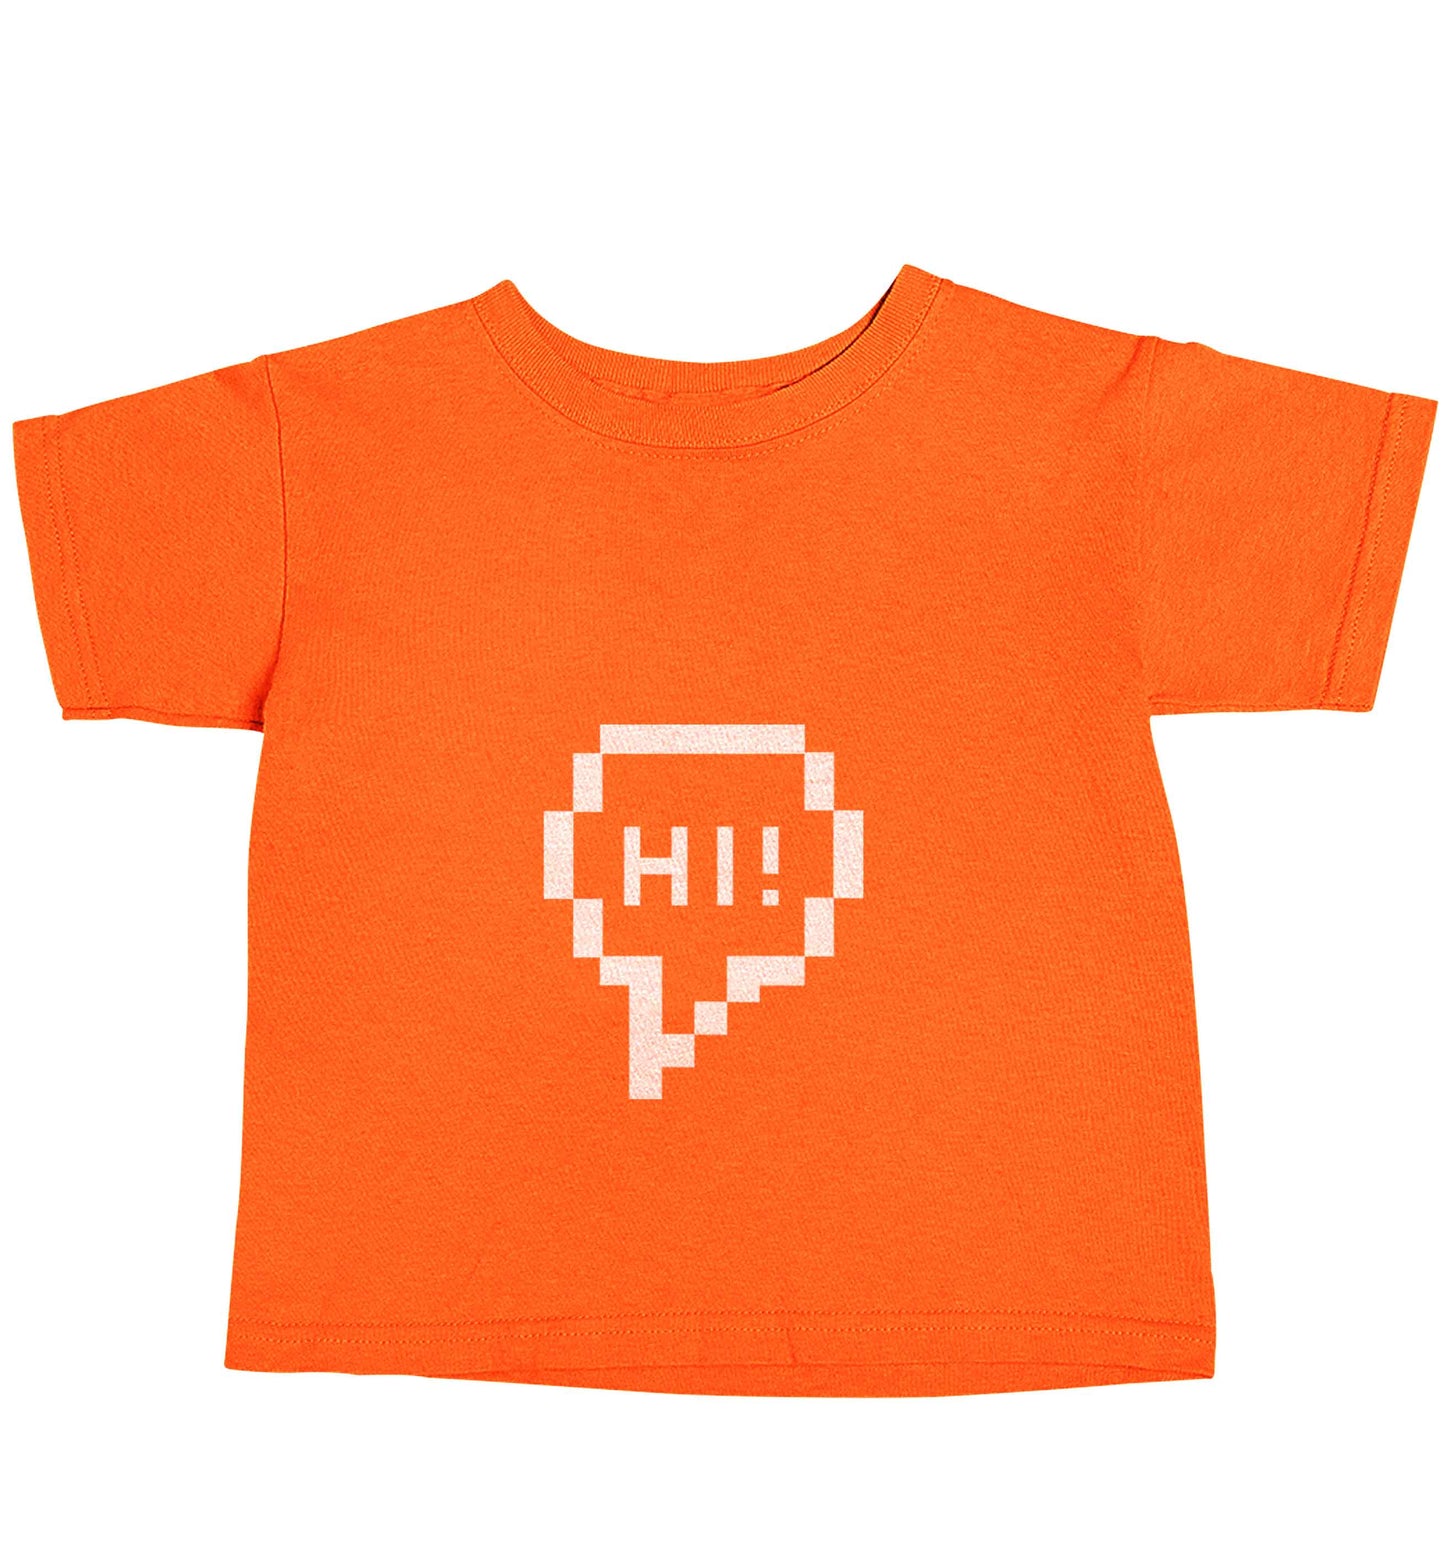 Hi orange baby toddler Tshirt 2 Years